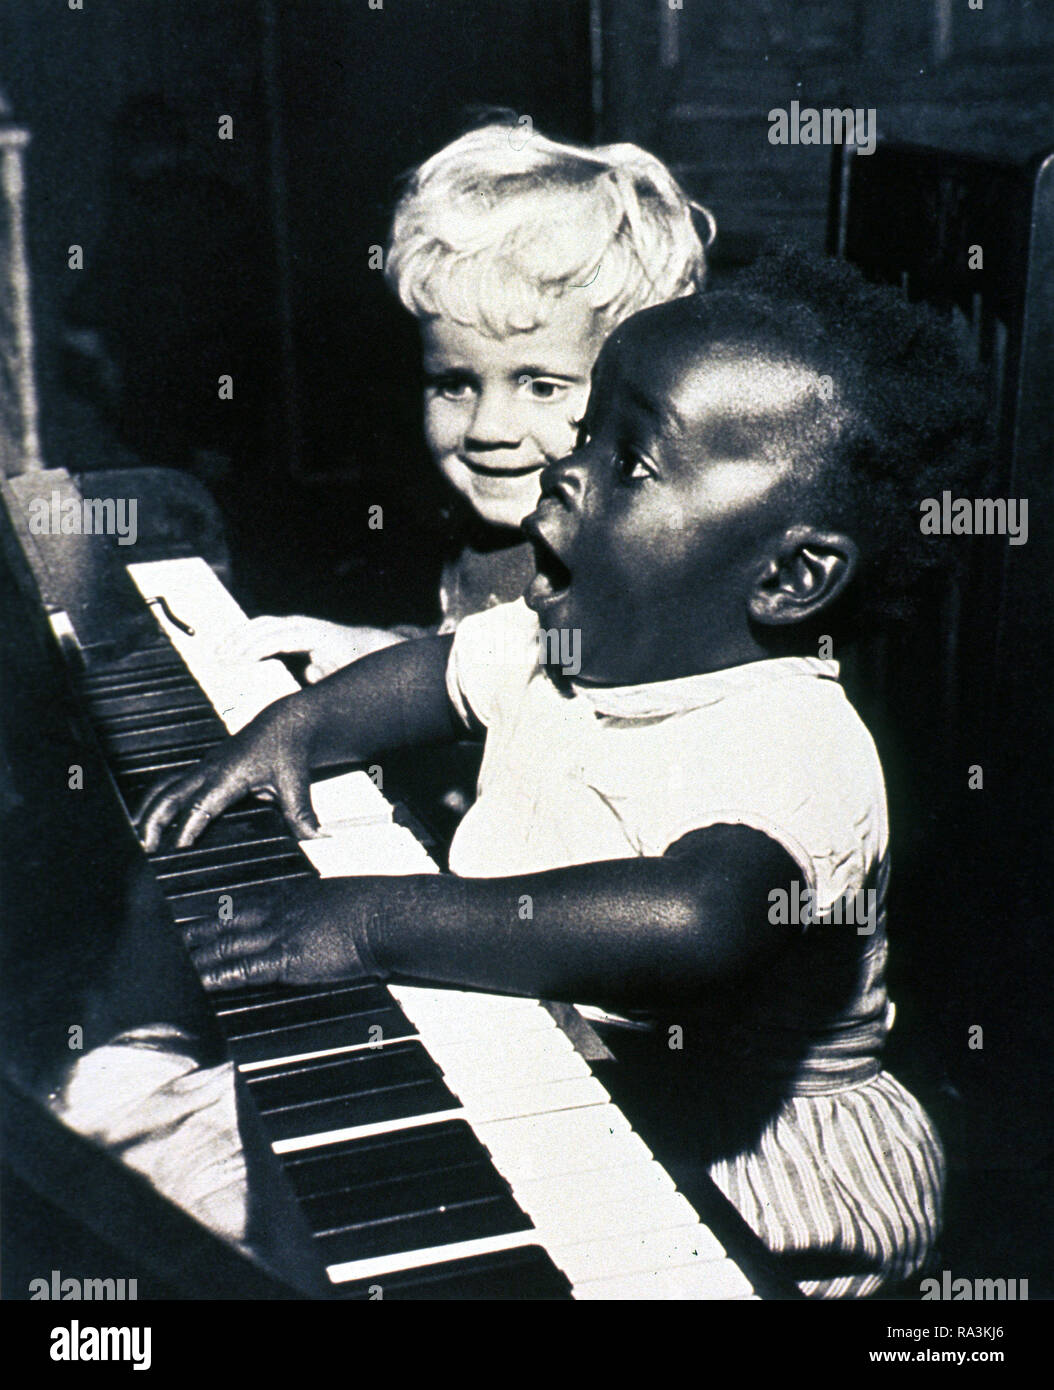 Deux enfants sont assis à un piano. L'African American enfant joue du piano et chante comme l'autre enfant regarde sur ca. Années 1950 Banque D'Images